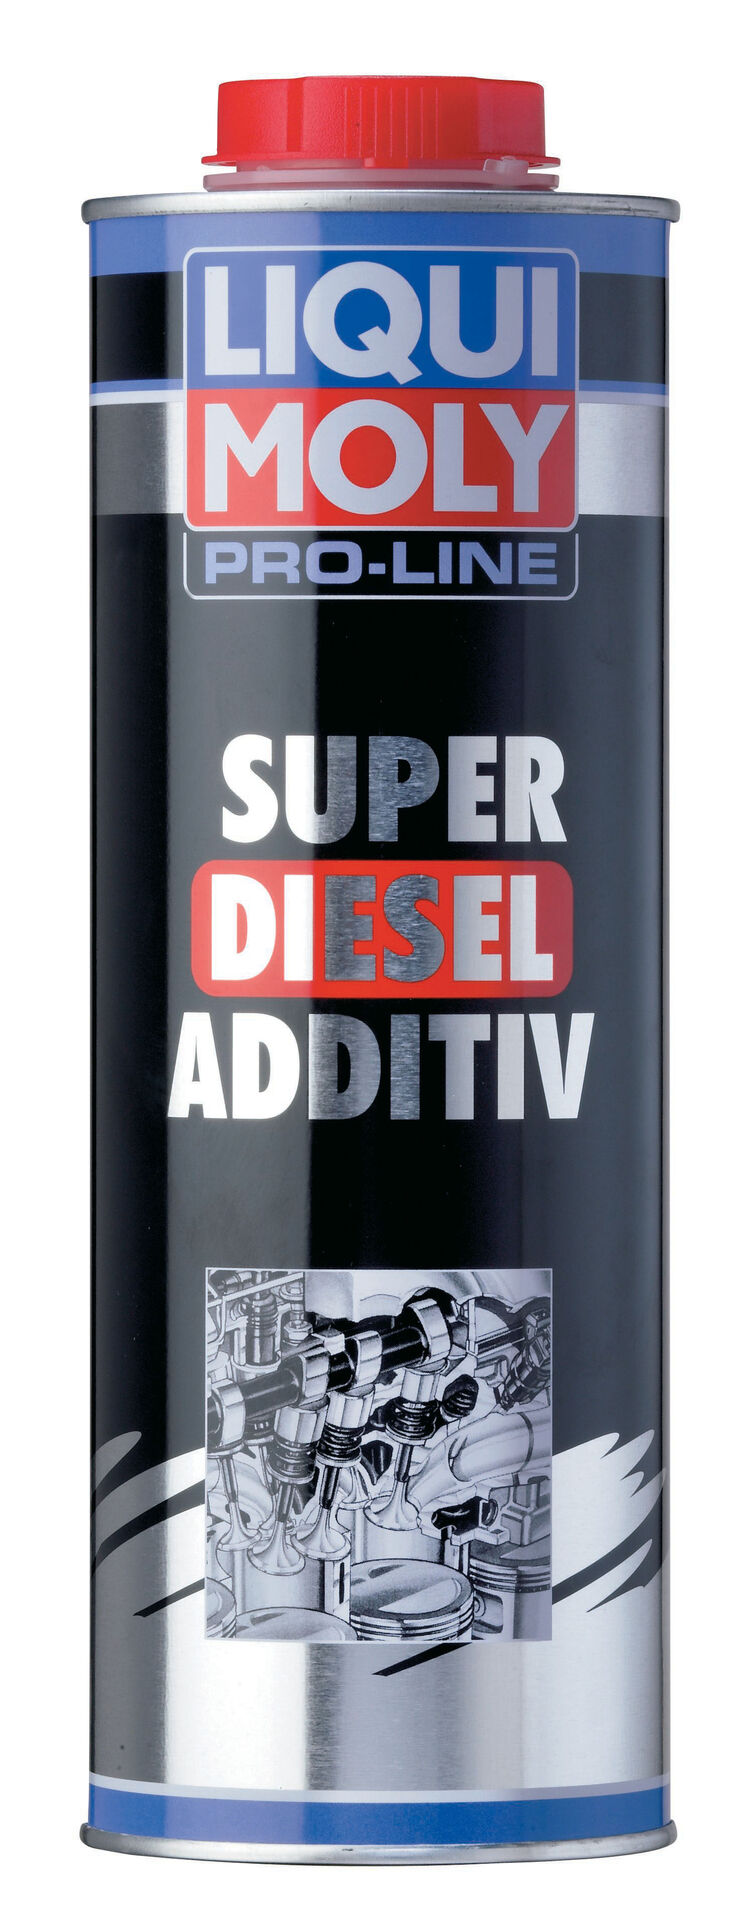 1l Liqui Moly Pro-Line Super Diesel Additiv 5176 Kraftstoffzusatz Additiv, Dieselzusätze (Additive), Kraftstoffzusätze (Additive), Service  Flüssigkeiten